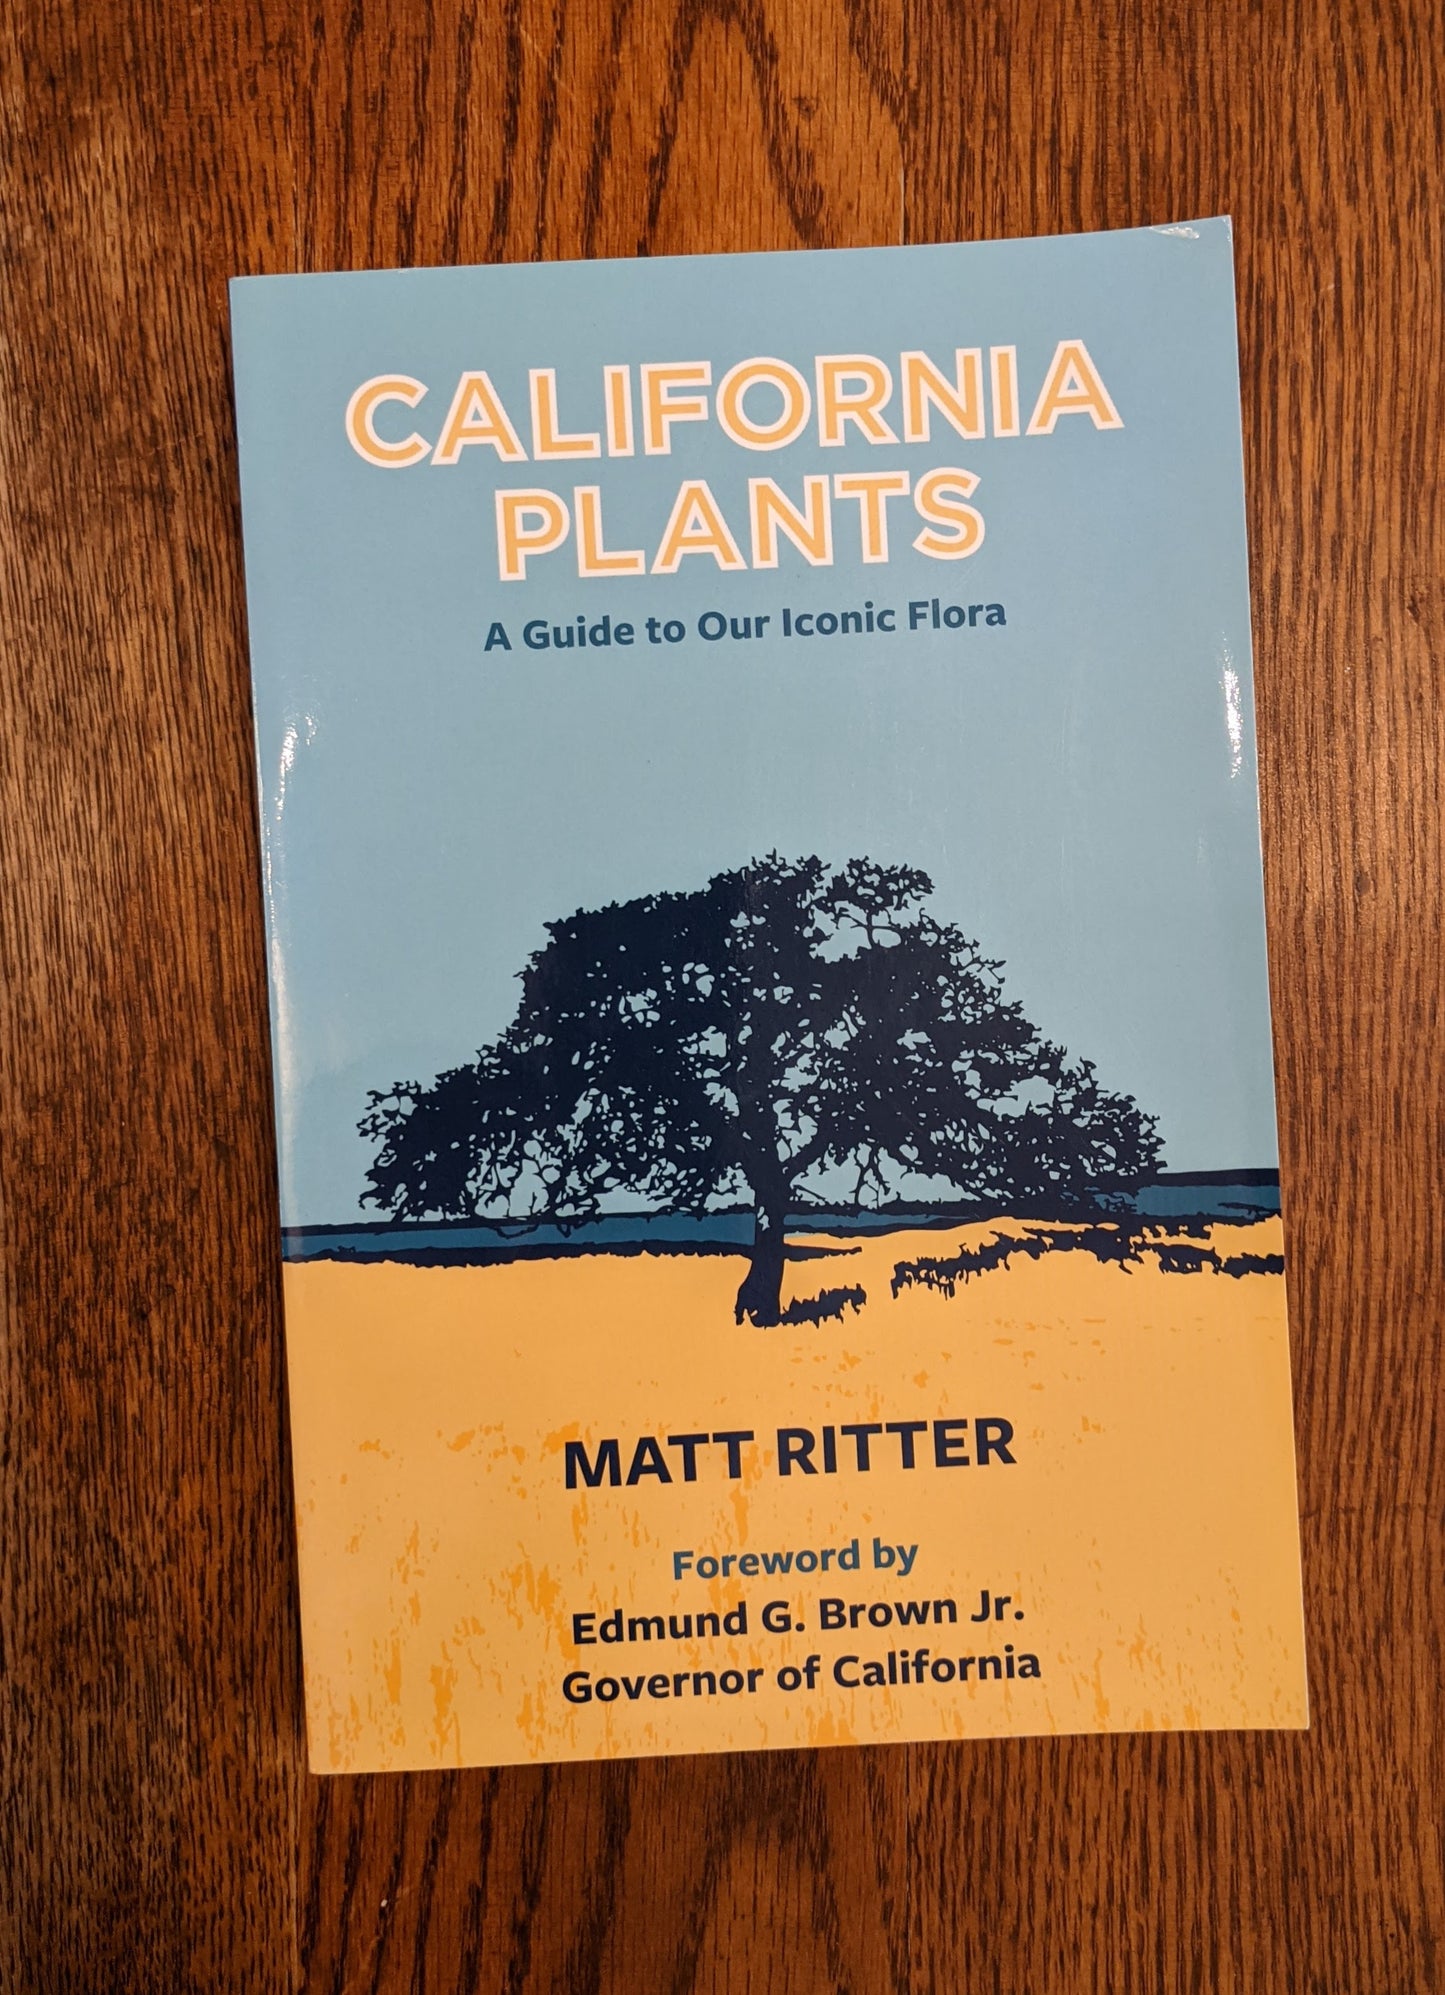 California Plants book by Matt Ritter